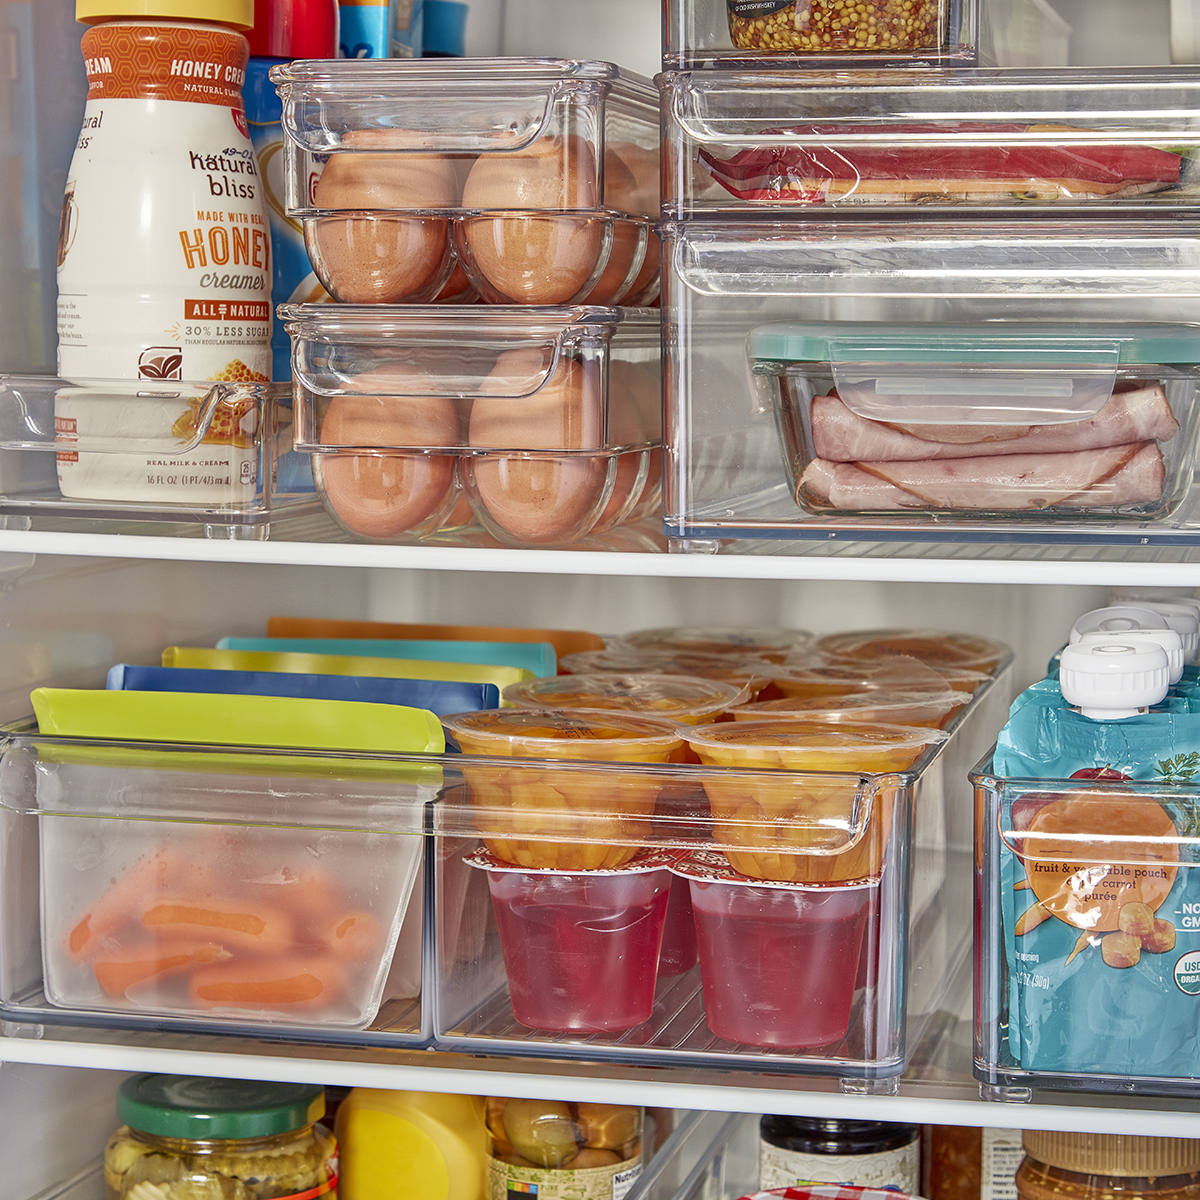 16 PC Refrigerator Organizer Bins Clear Storage Bins for Pantry or Freezer Bins 